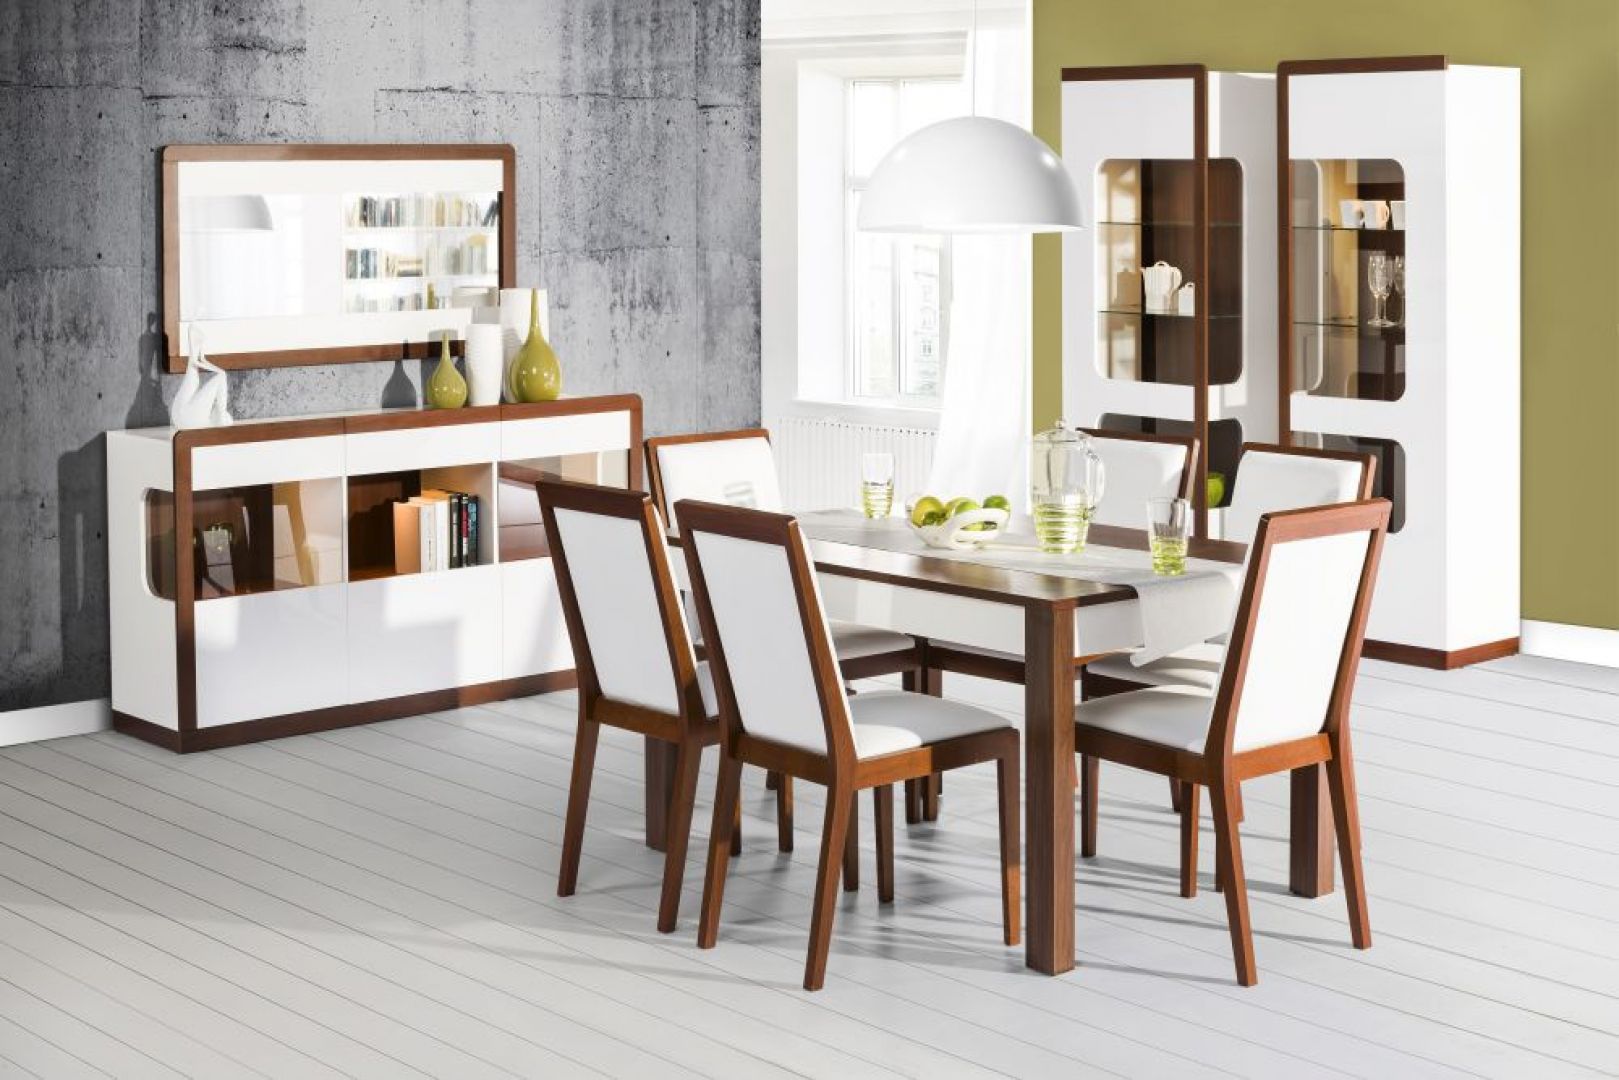 Jadalnia Malta marki Szynaka Meble to nowoczesna propozycja białych mebli ocieplonych elementami drewna. Cena stołu: 549 zł. Cena krzesła: 299 zł. Fot. Szynaka Meble